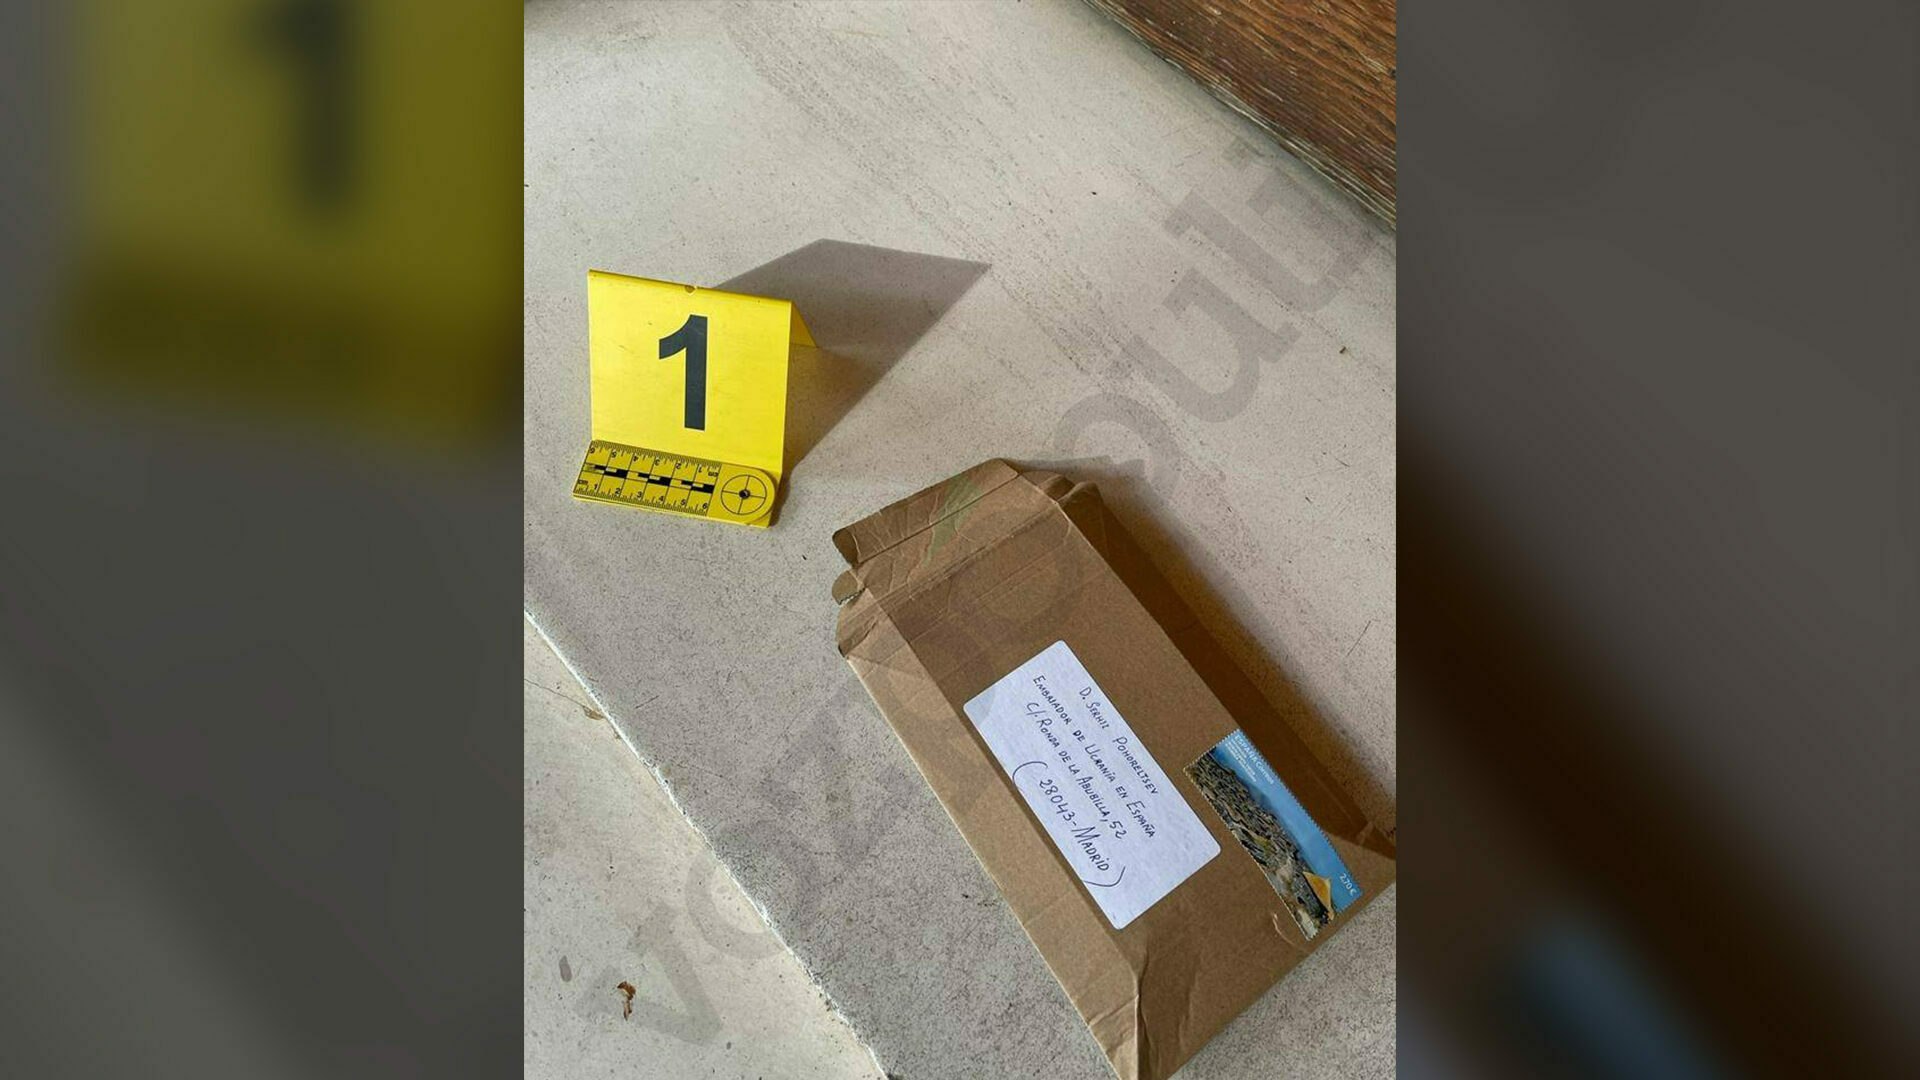 El paquete con la carta bomba que ha explotado este miércoles en la Embajada de Ucrania en Madrid